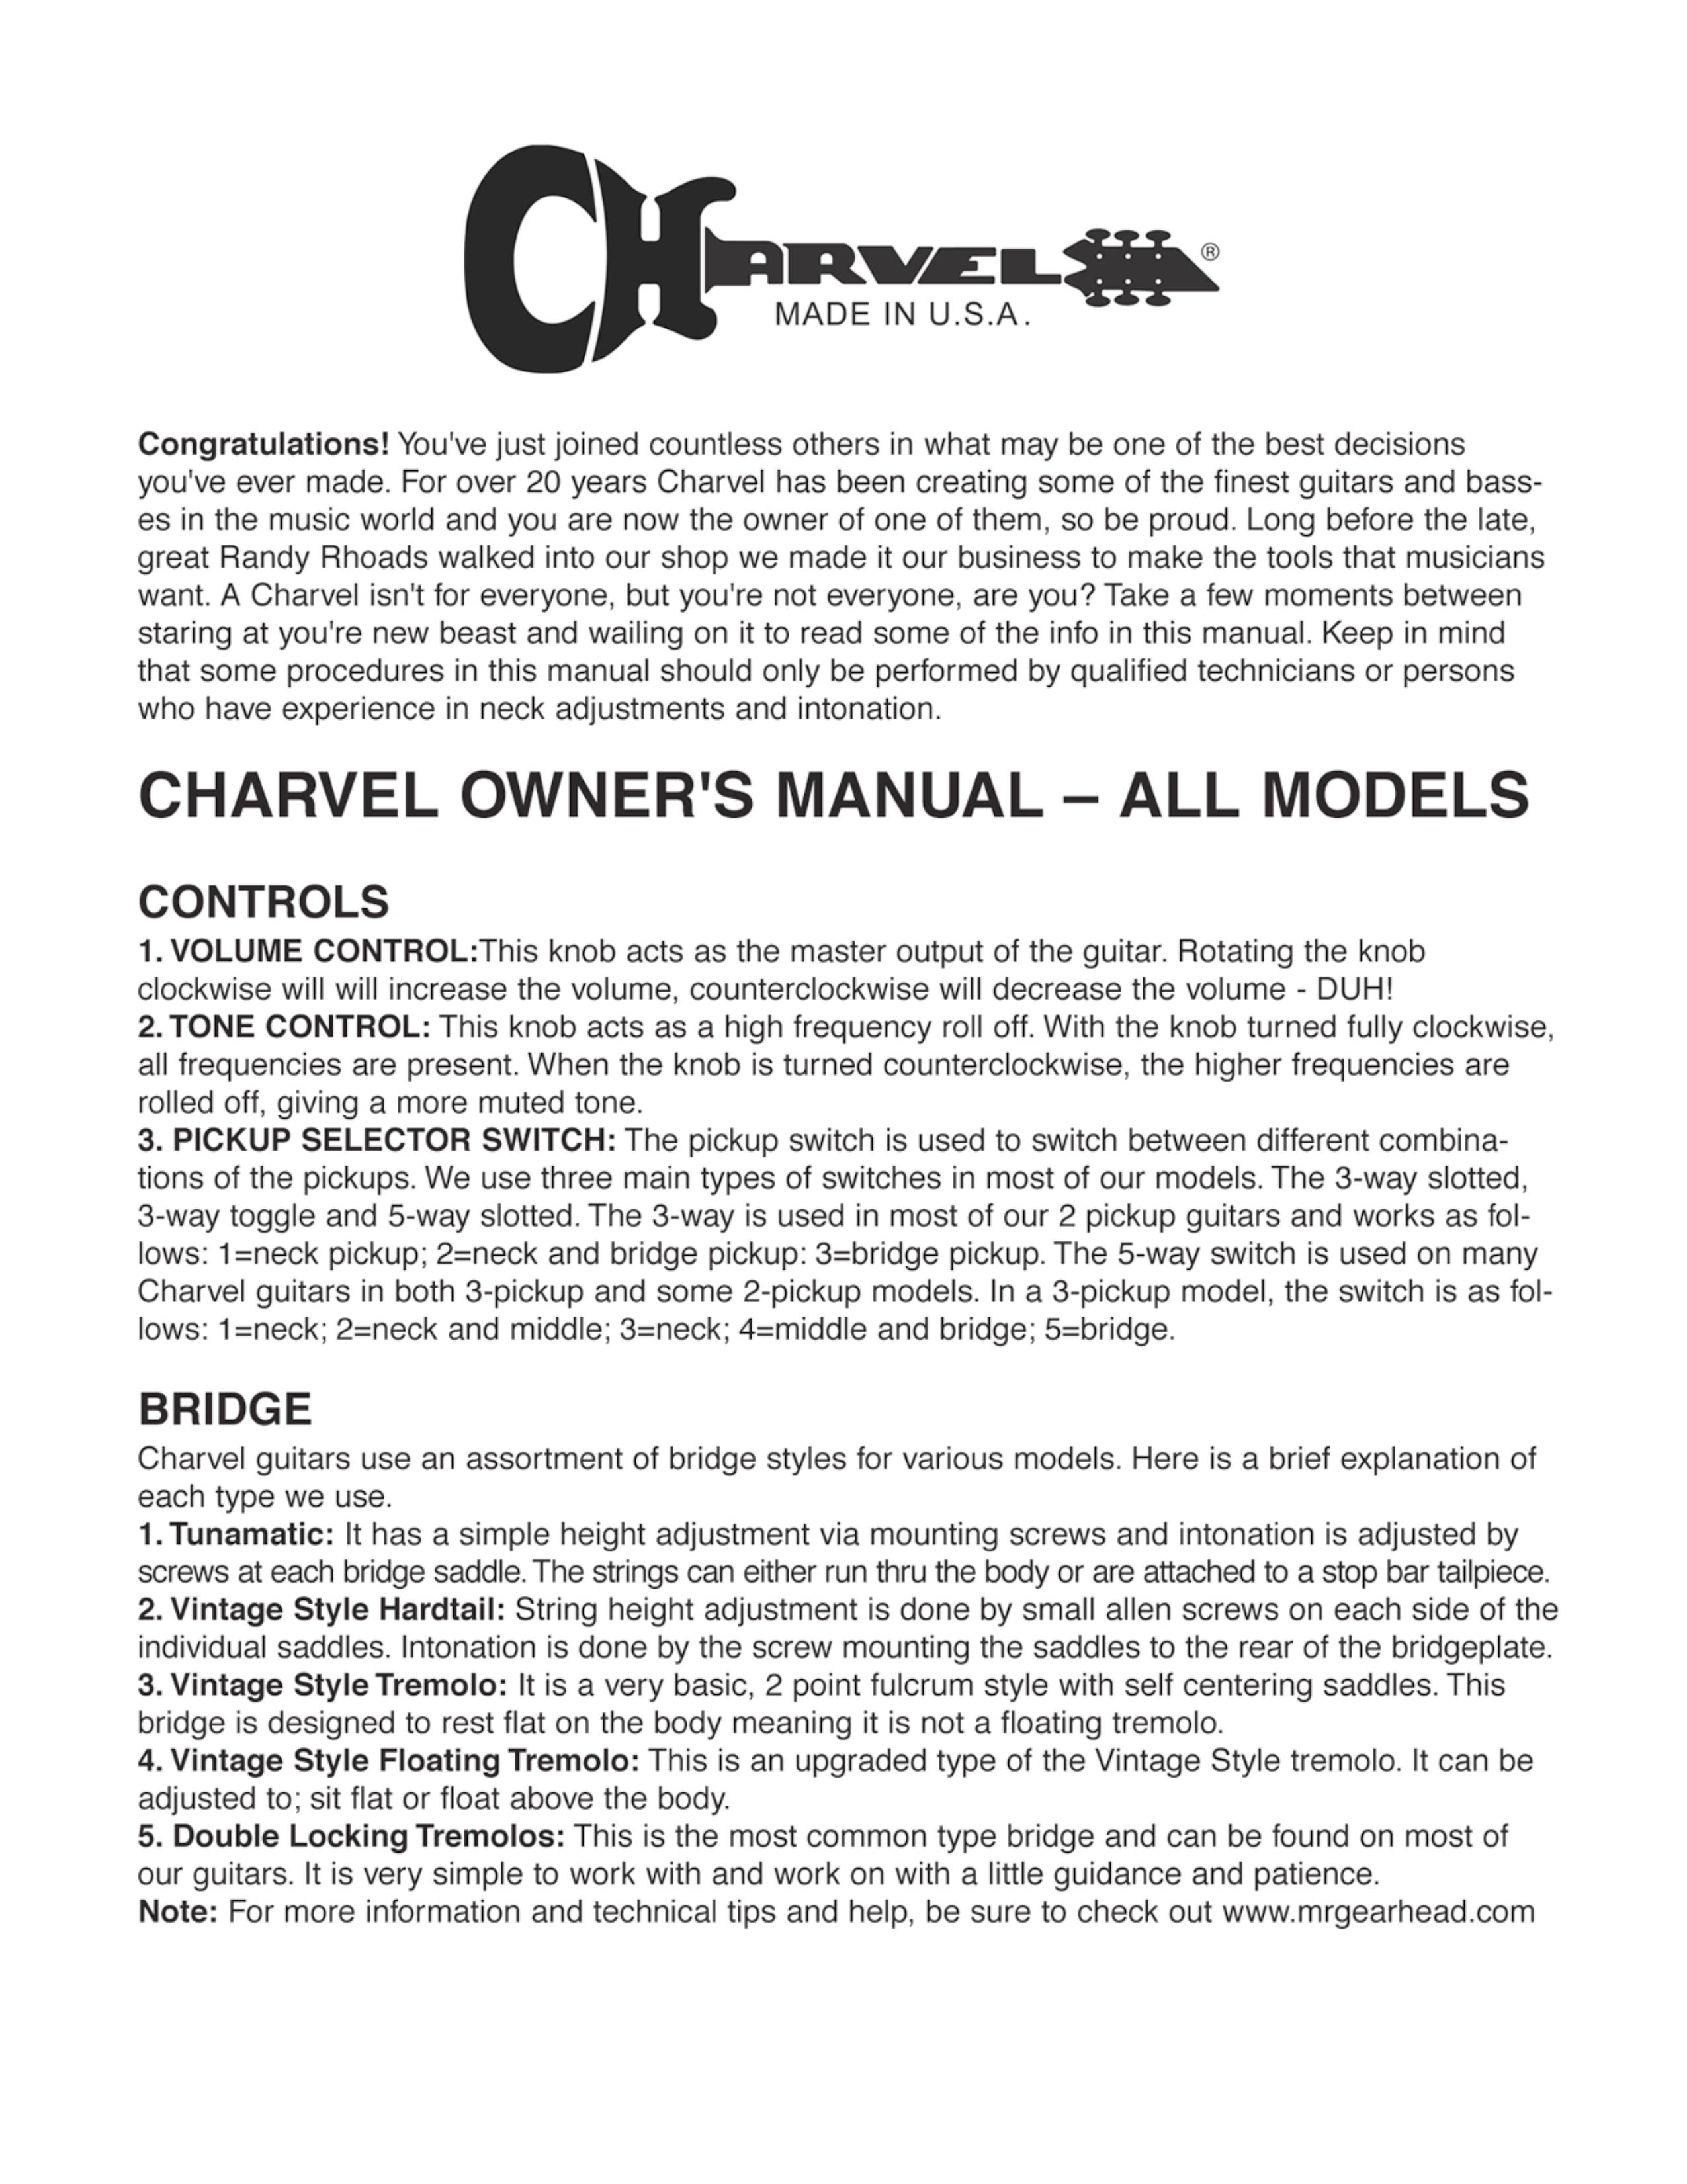 Charvel San Dimas Bass Guitar User Manual